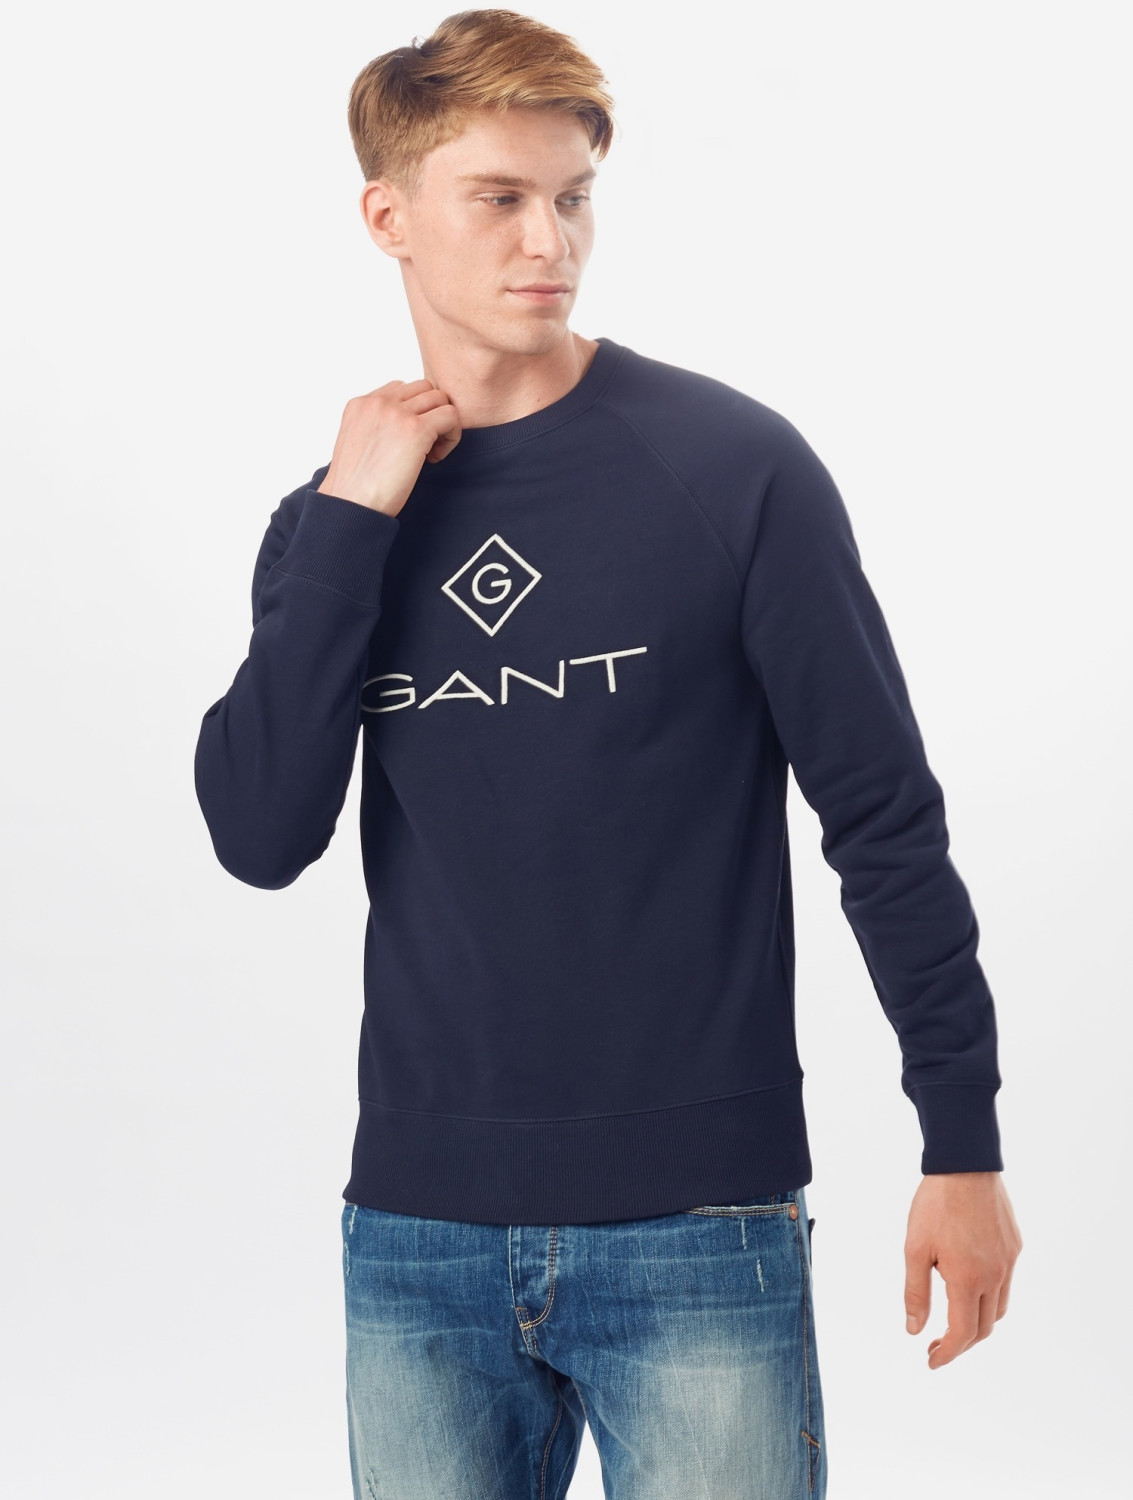 GANT Logo Sweatshirt ( 2046062-433) evening blue ab 64,94 € |  Preisvergleich bei